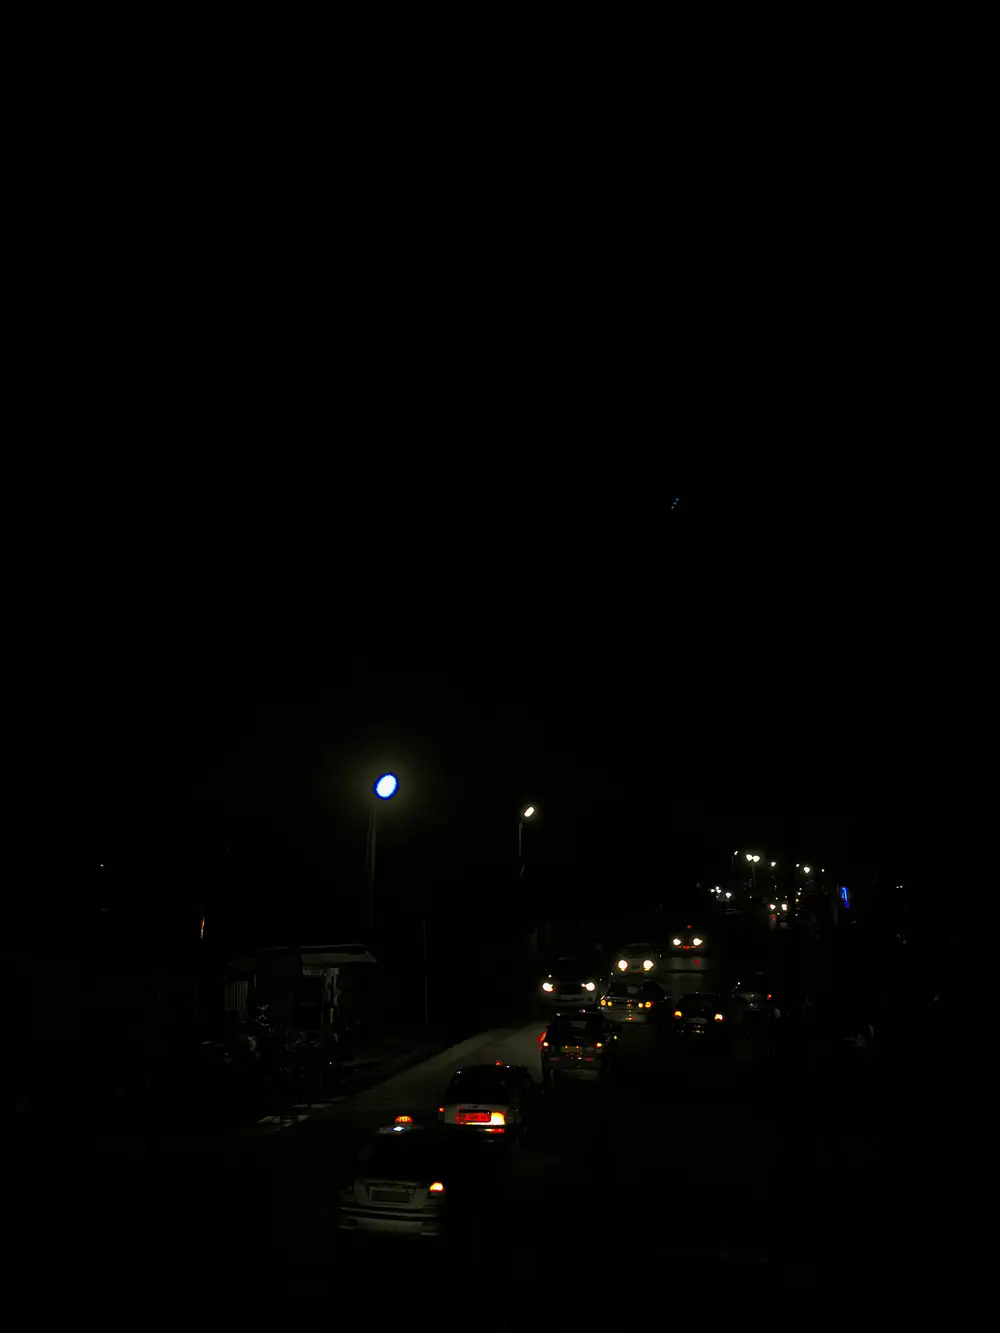 cars moving at night